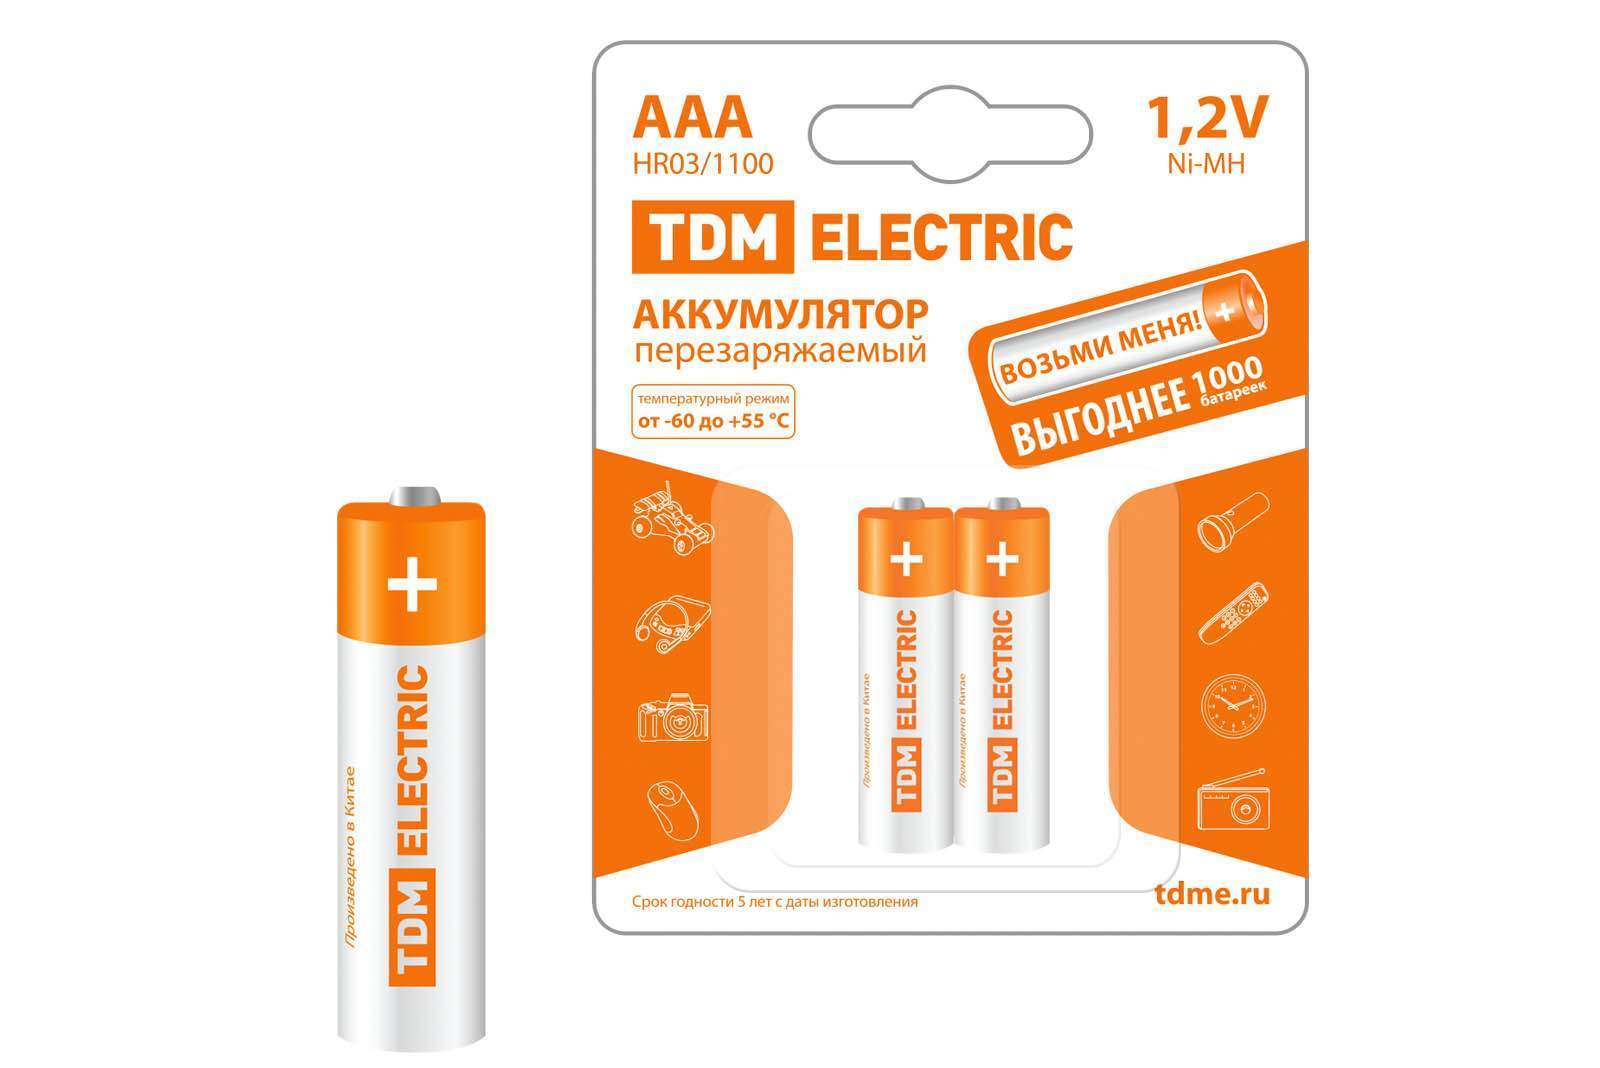 аккумулятор aaa-1100 mah ni-mh bp-2 tdm от BTSprom.by